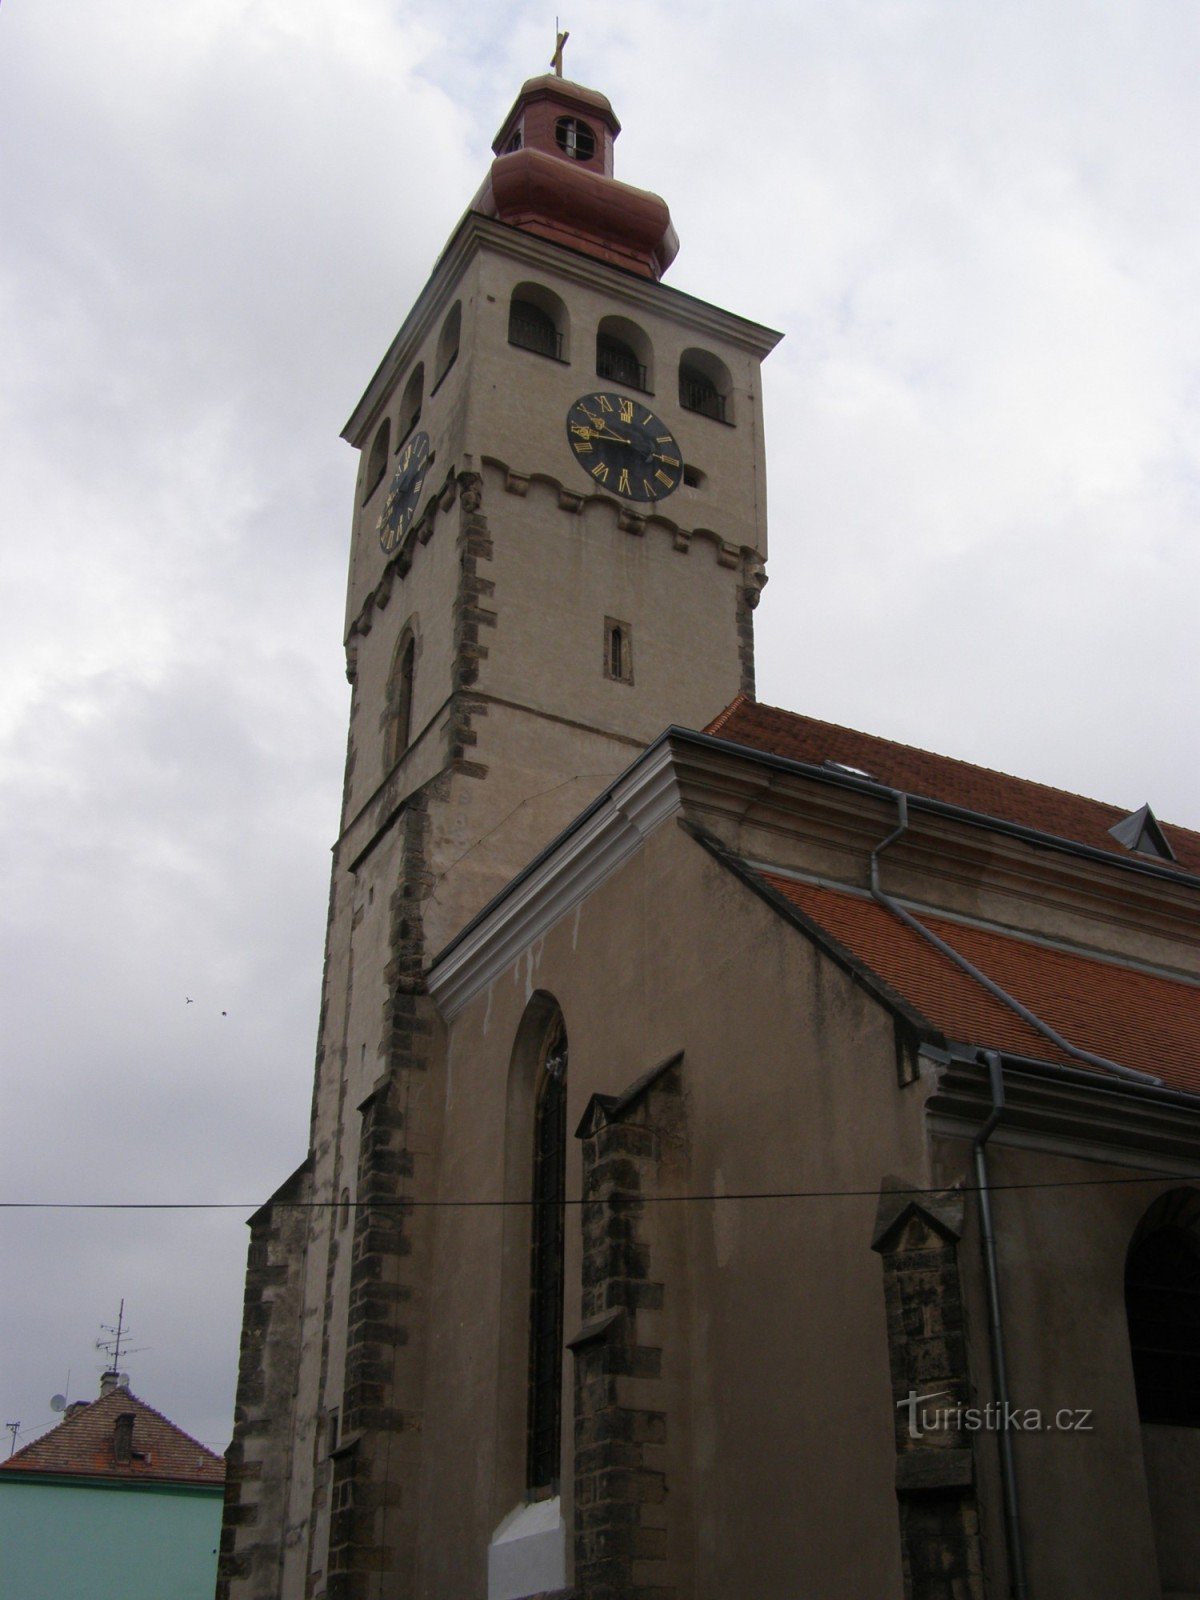 Nový Bydžov - nhà thờ St. Lawrence